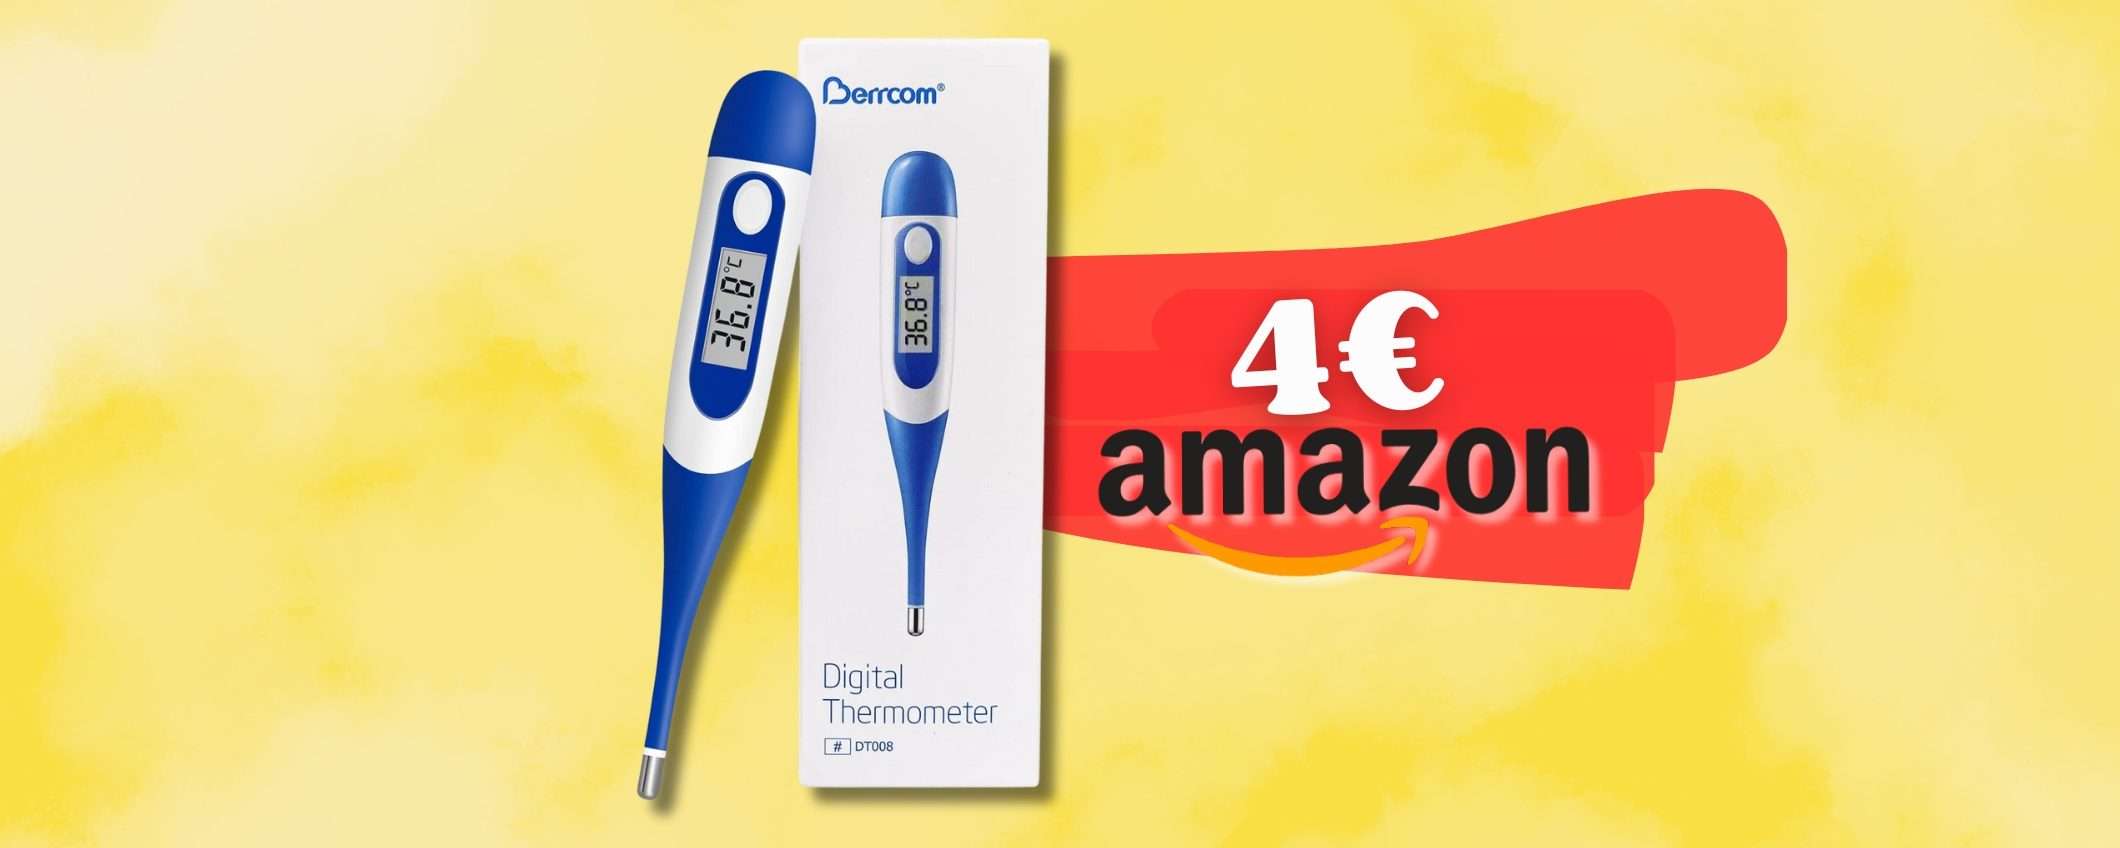 Sempre utile in casa un TERMOMETRO digitale, tuo con 4€ su Amazon